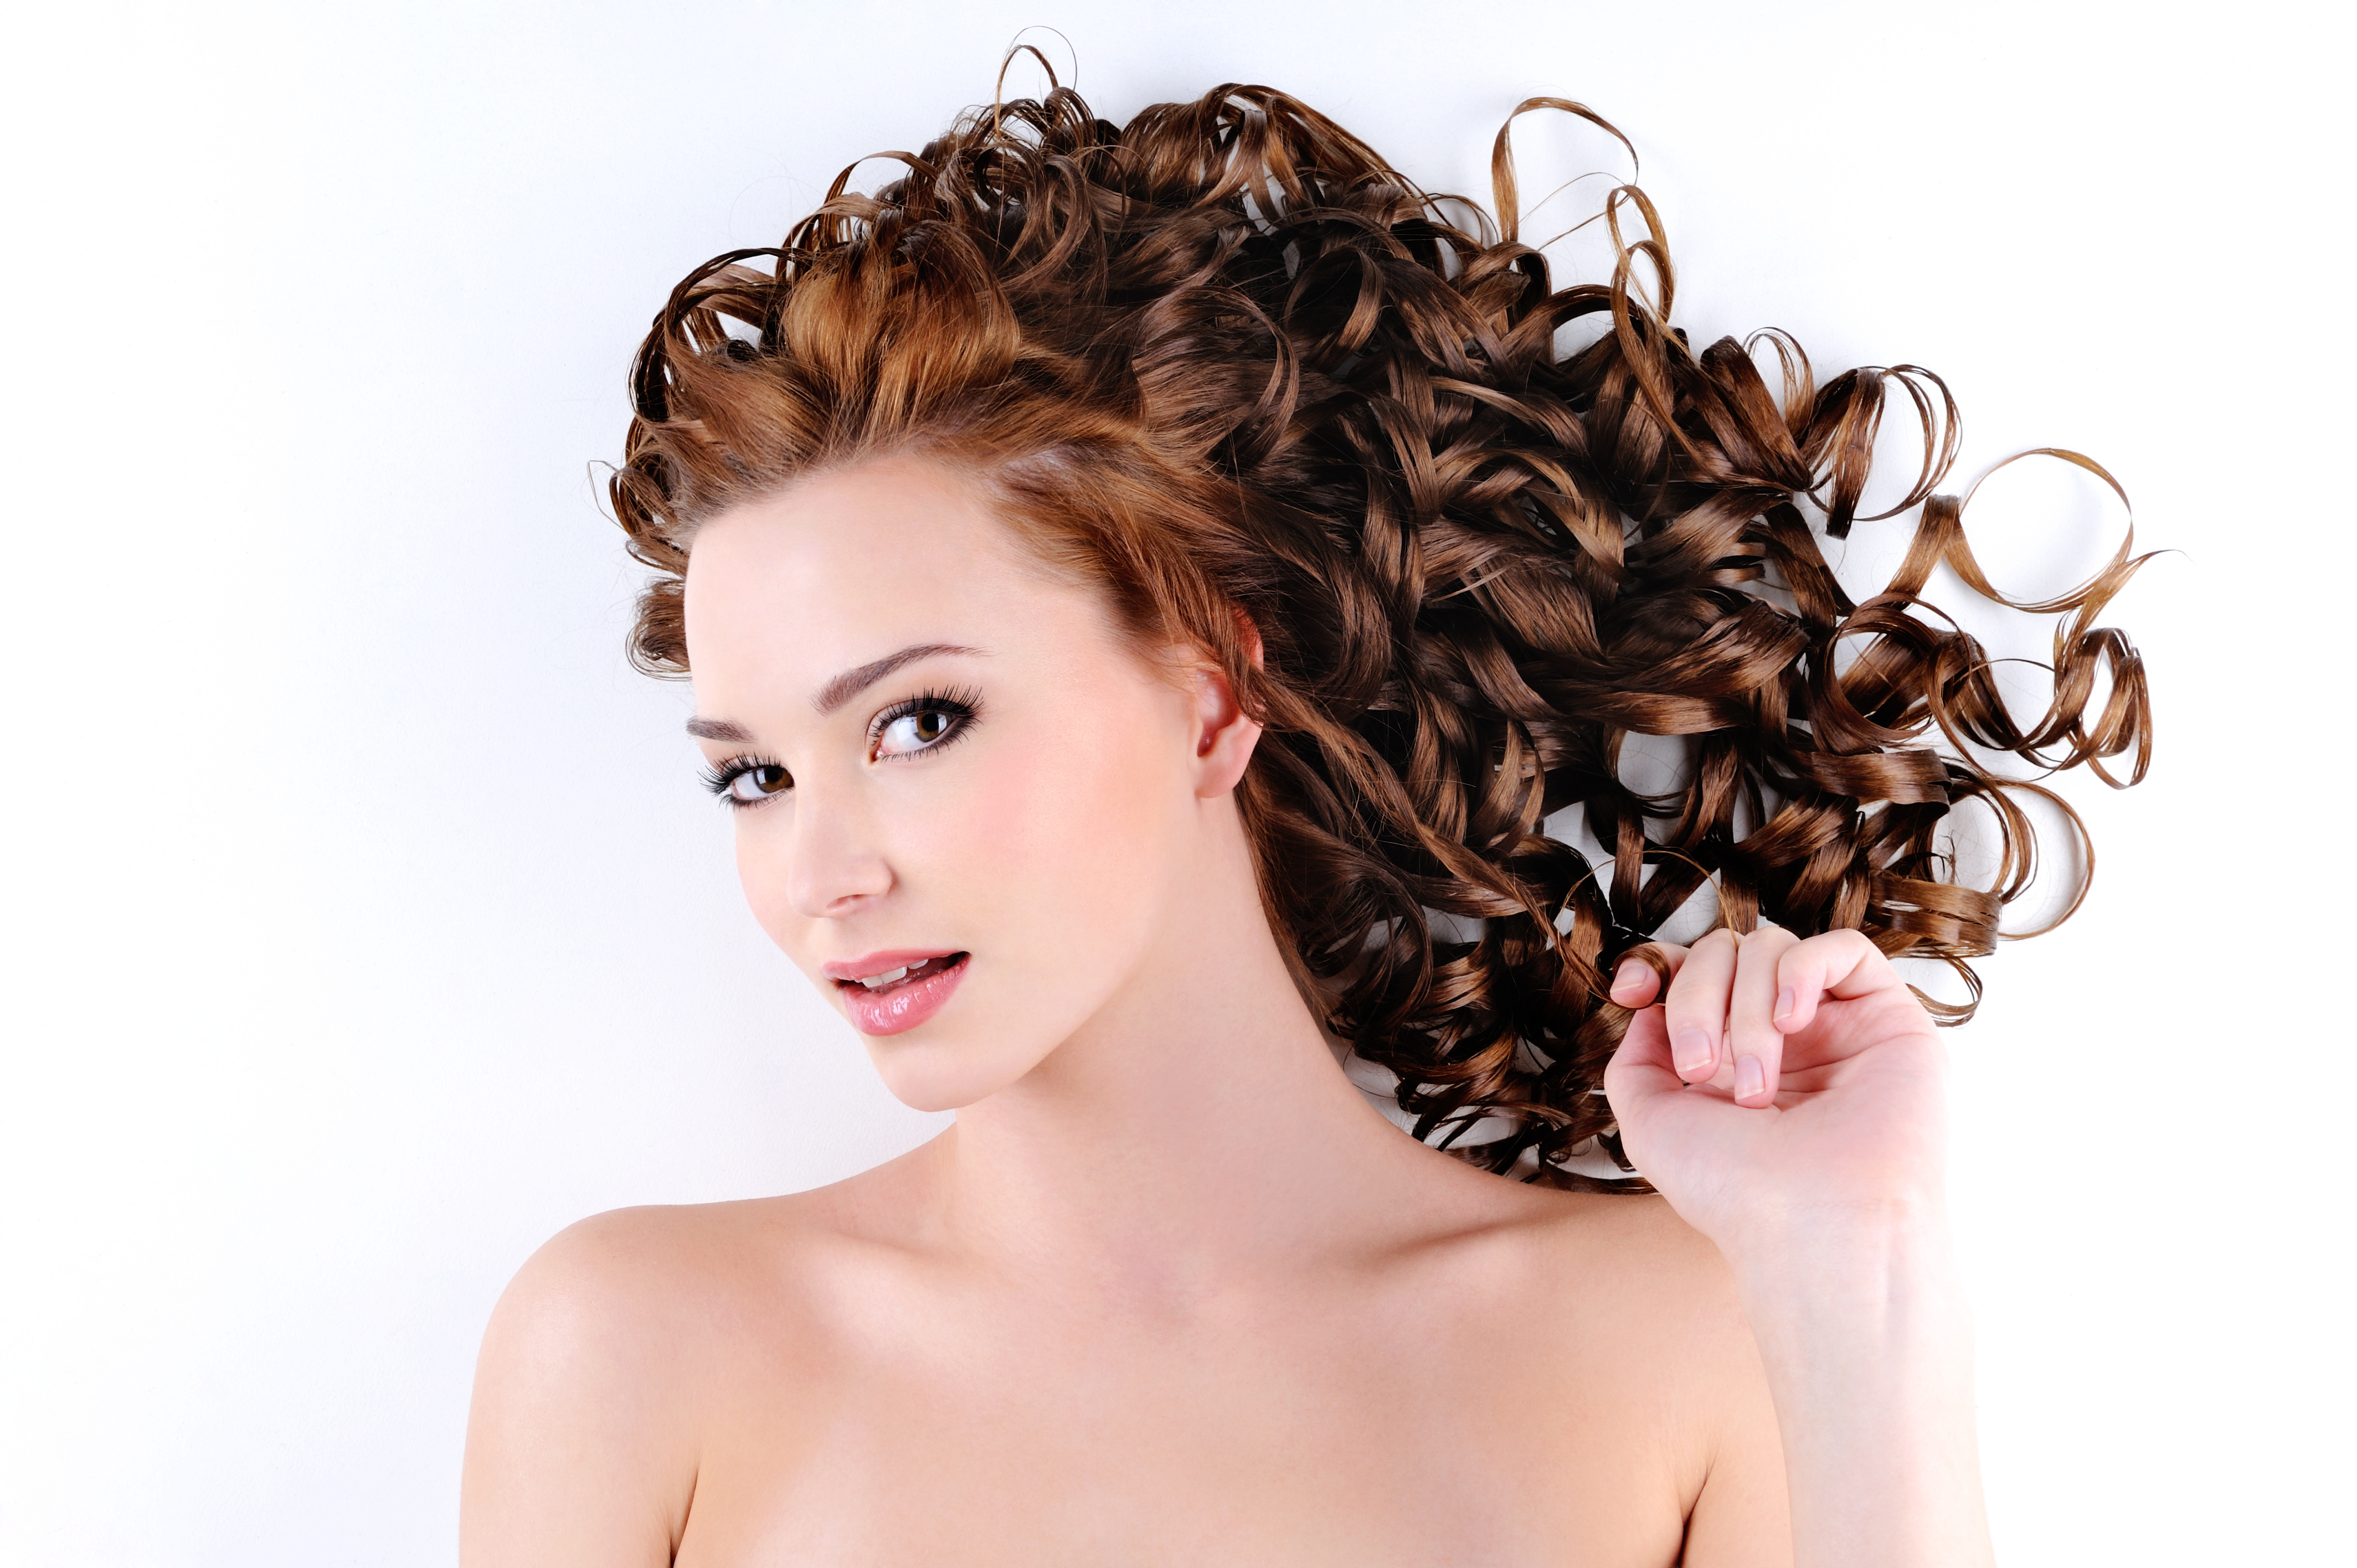 Come trattare i capelli: mantenerli sani e belli